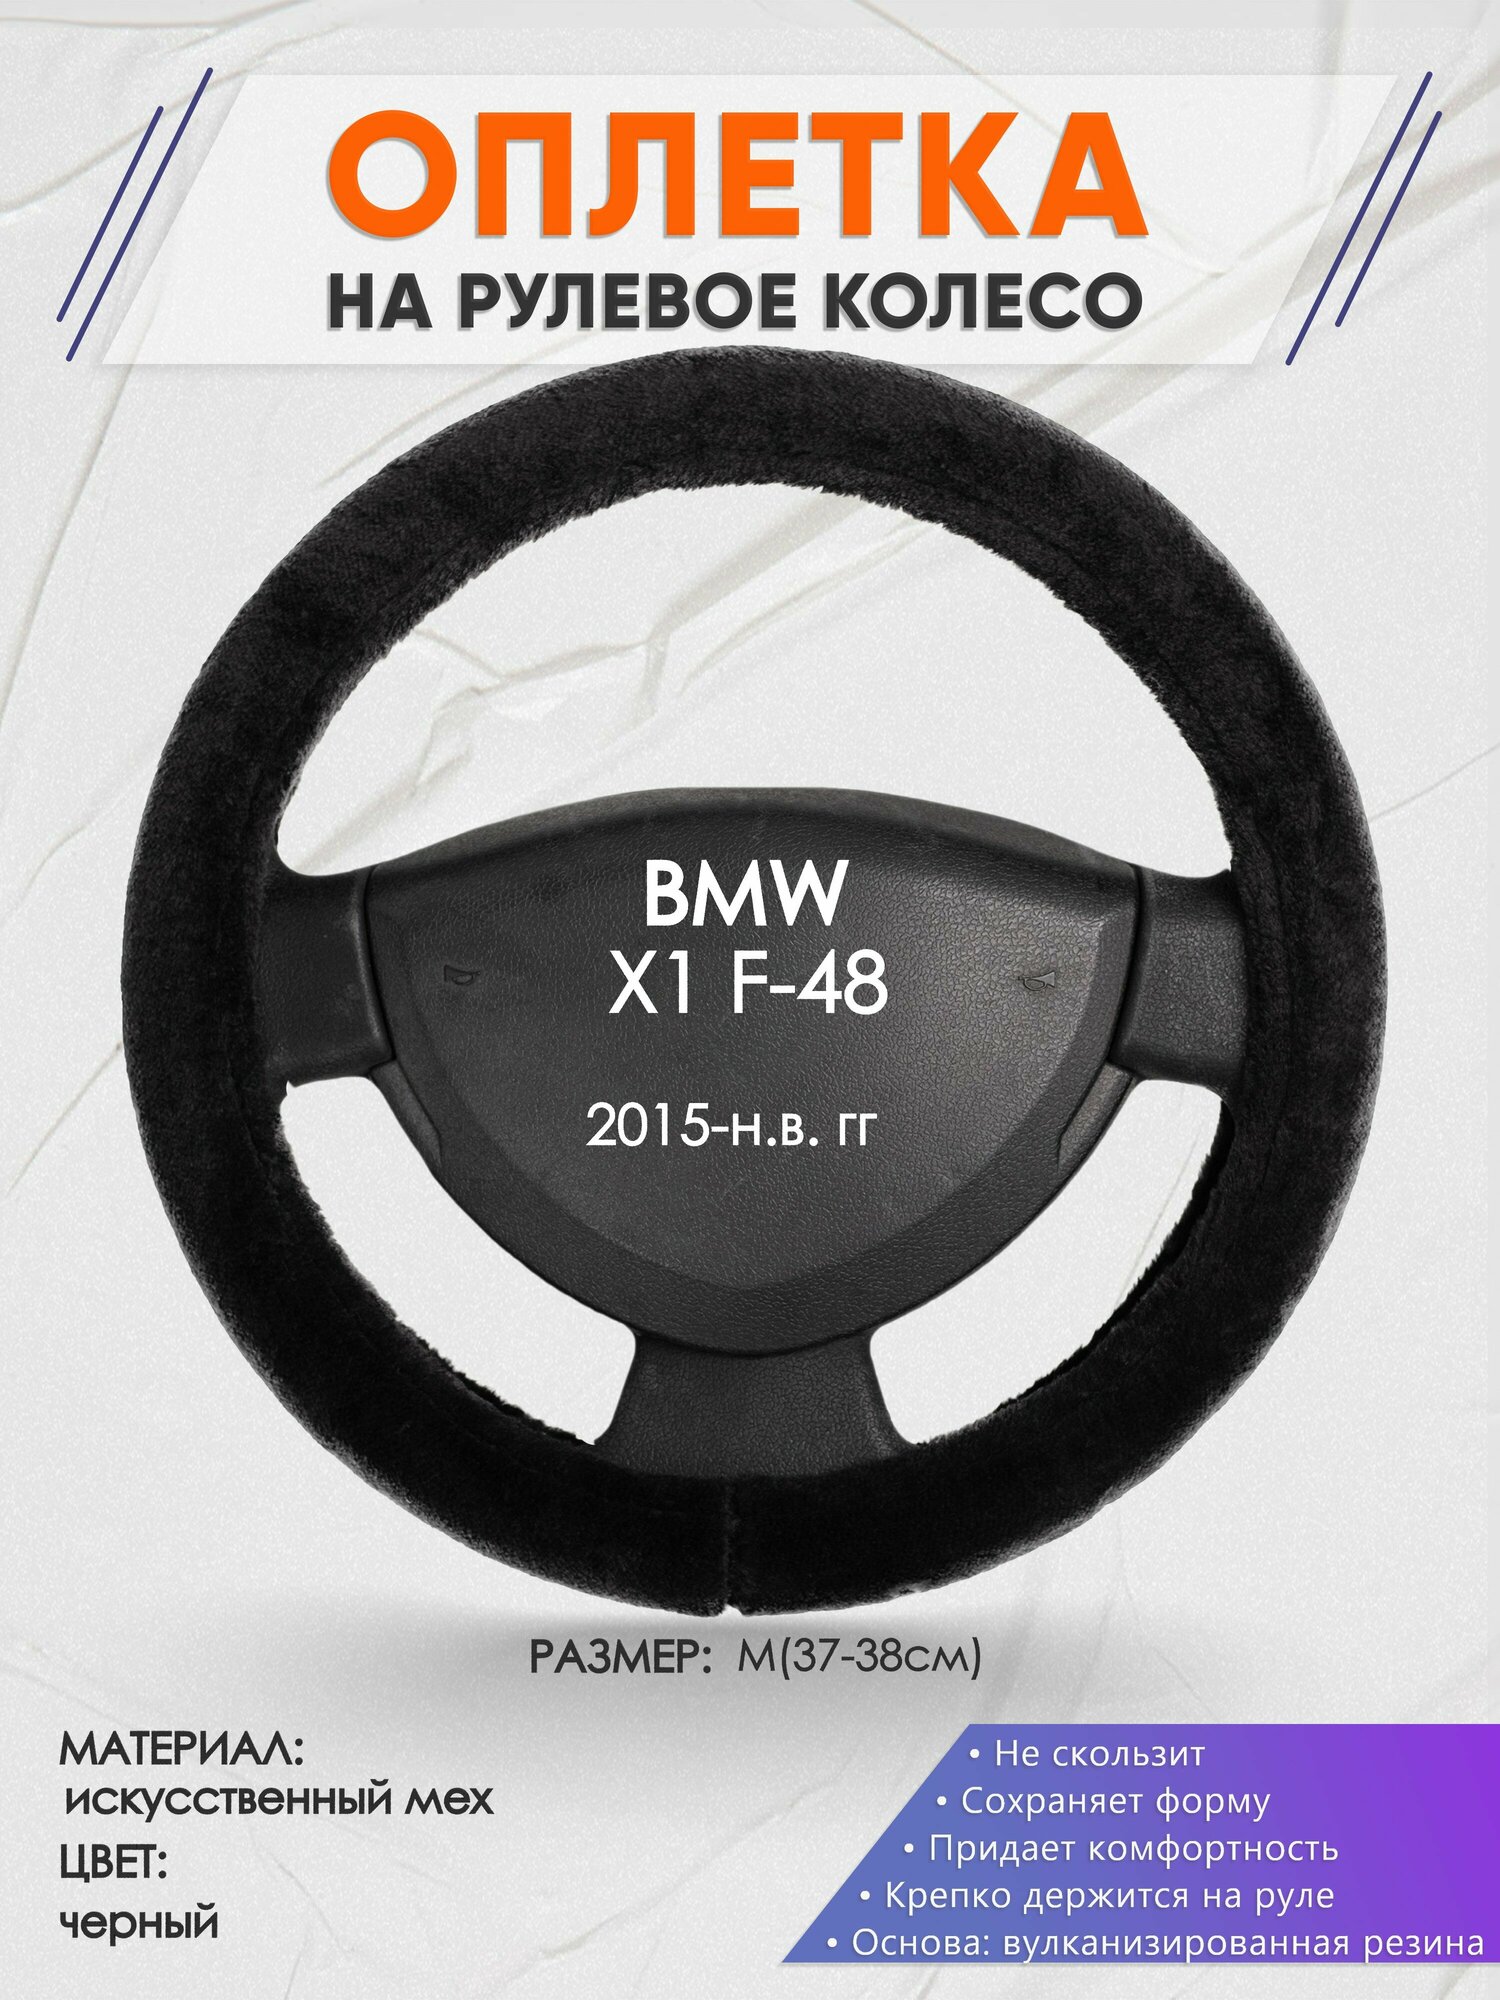 Оплетка на руль для BMW X1 F-48(БМВ икс 1 ф48) 2015-н. в, M(37-38см), Искусственный мех 45